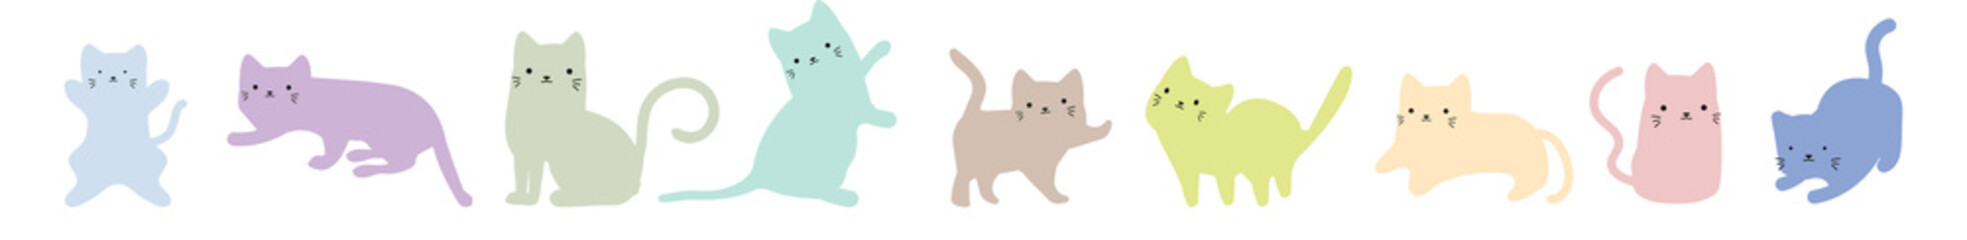 Cute cat doodle pastel color set